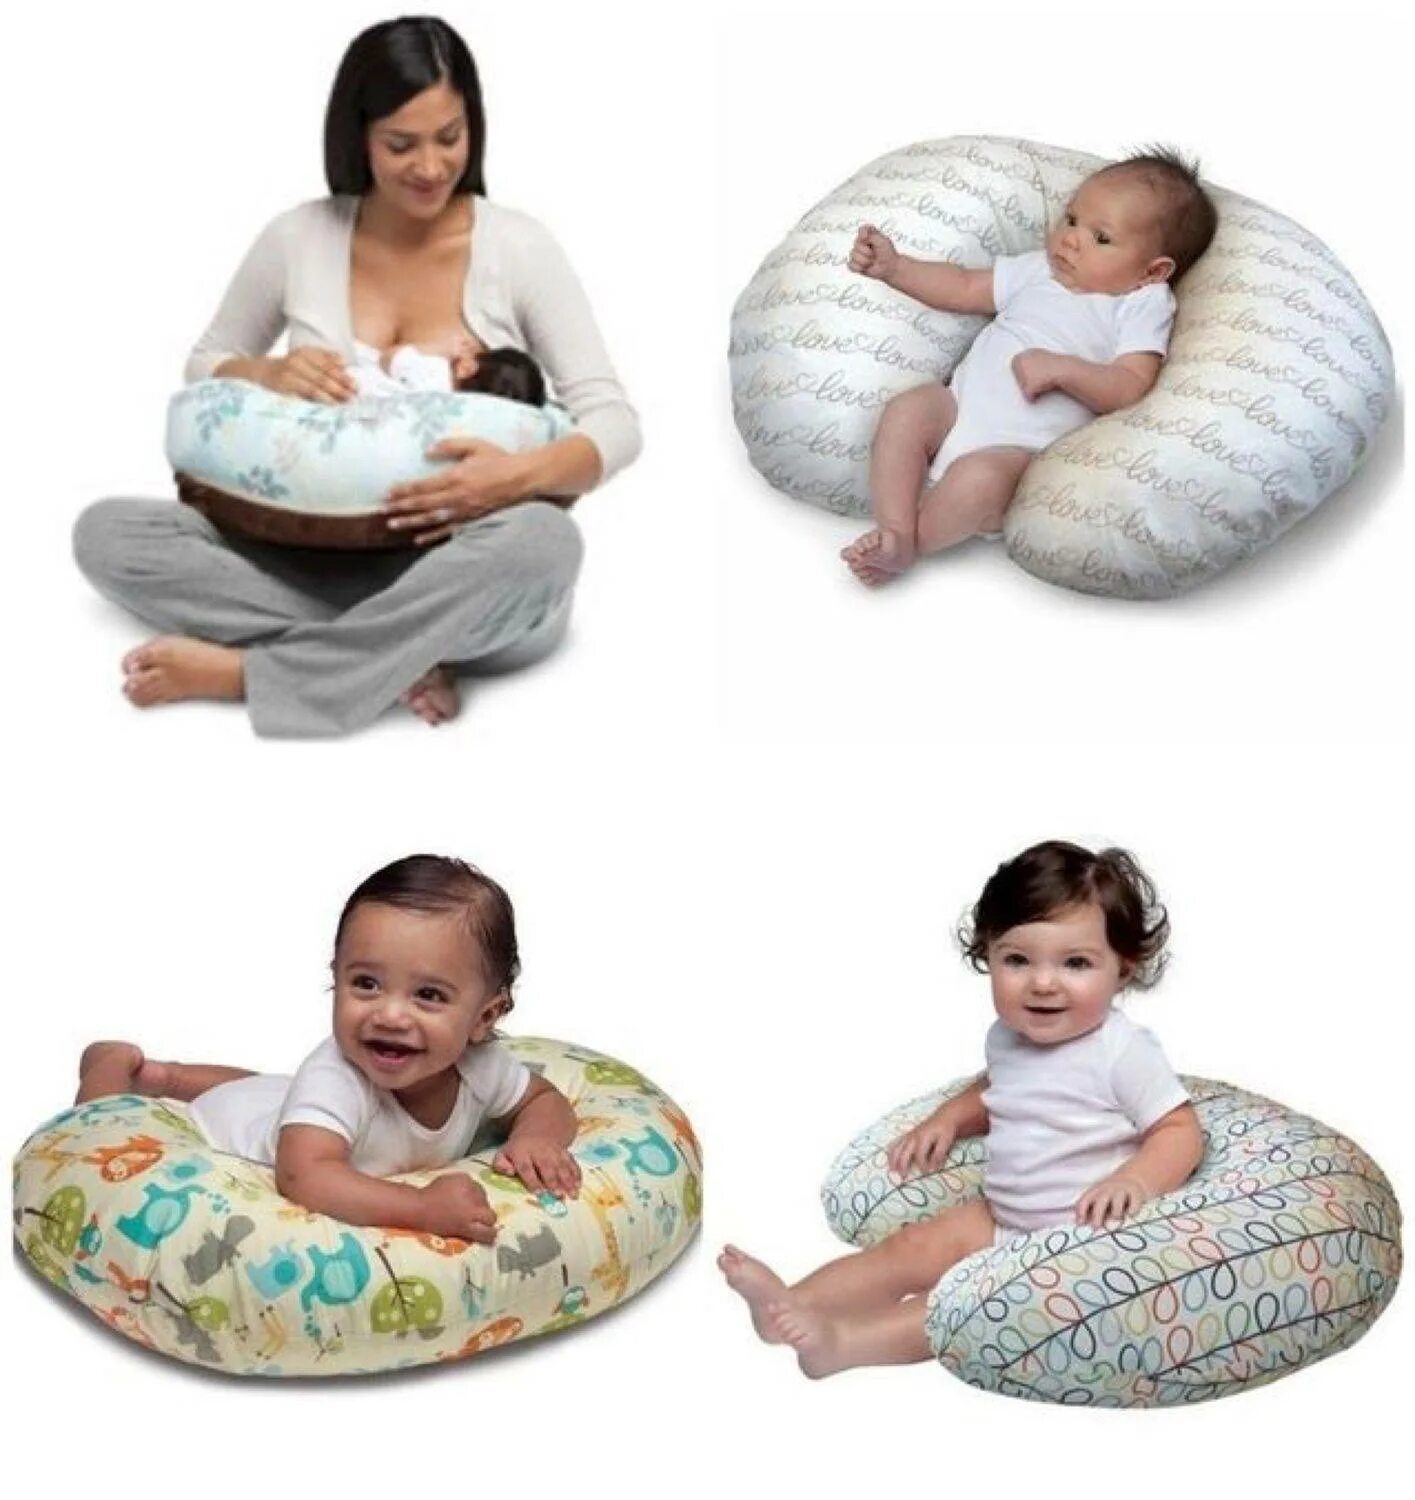 Можно ли подушку. Подушка для кормления. Подушка для кормления грудного. Подушка для кормления грудного ребенка новорожденного. Подушка для беременных и кормления грудного ребенка.